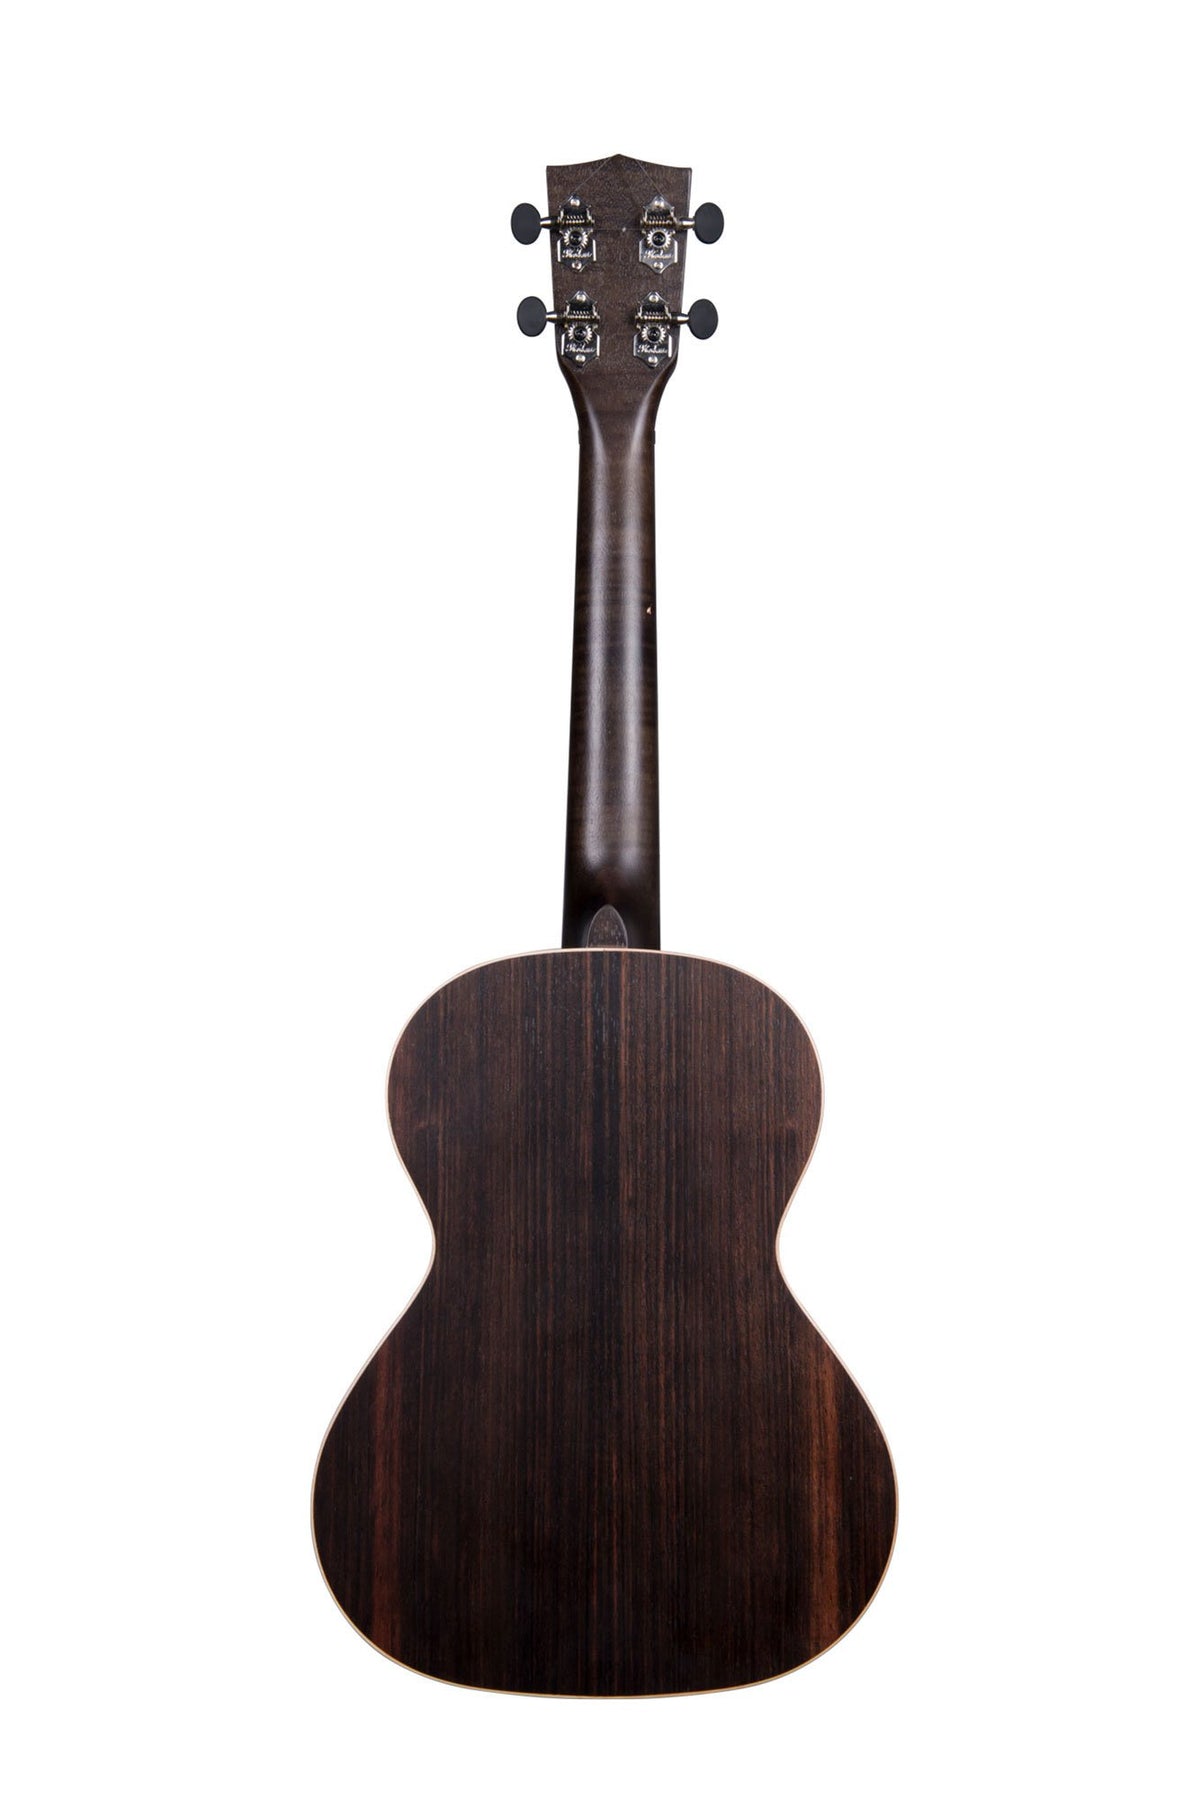 Kala KA-EBY-T Tenor Ebony tone wood ukulele-trading-co-australia - Kala KA-EBY-T TENOR UKULELE - Kala - Ukuleles Ukulele for sale Adelaide South Australia